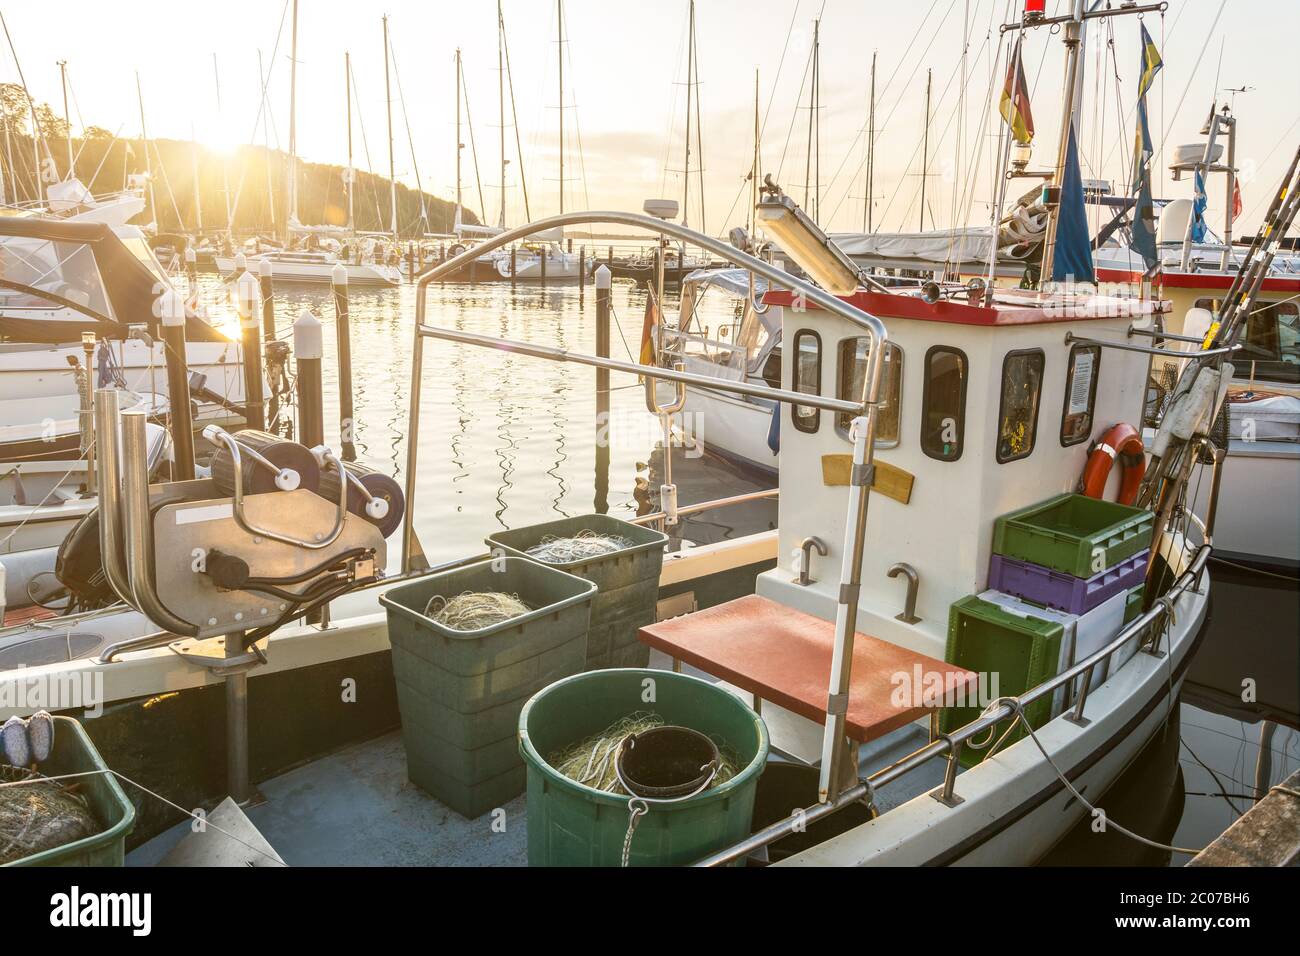 Kleines Fischerboot, das bei einem malerischen Sonnenuntergang im Hafen ankern kann Stockfoto